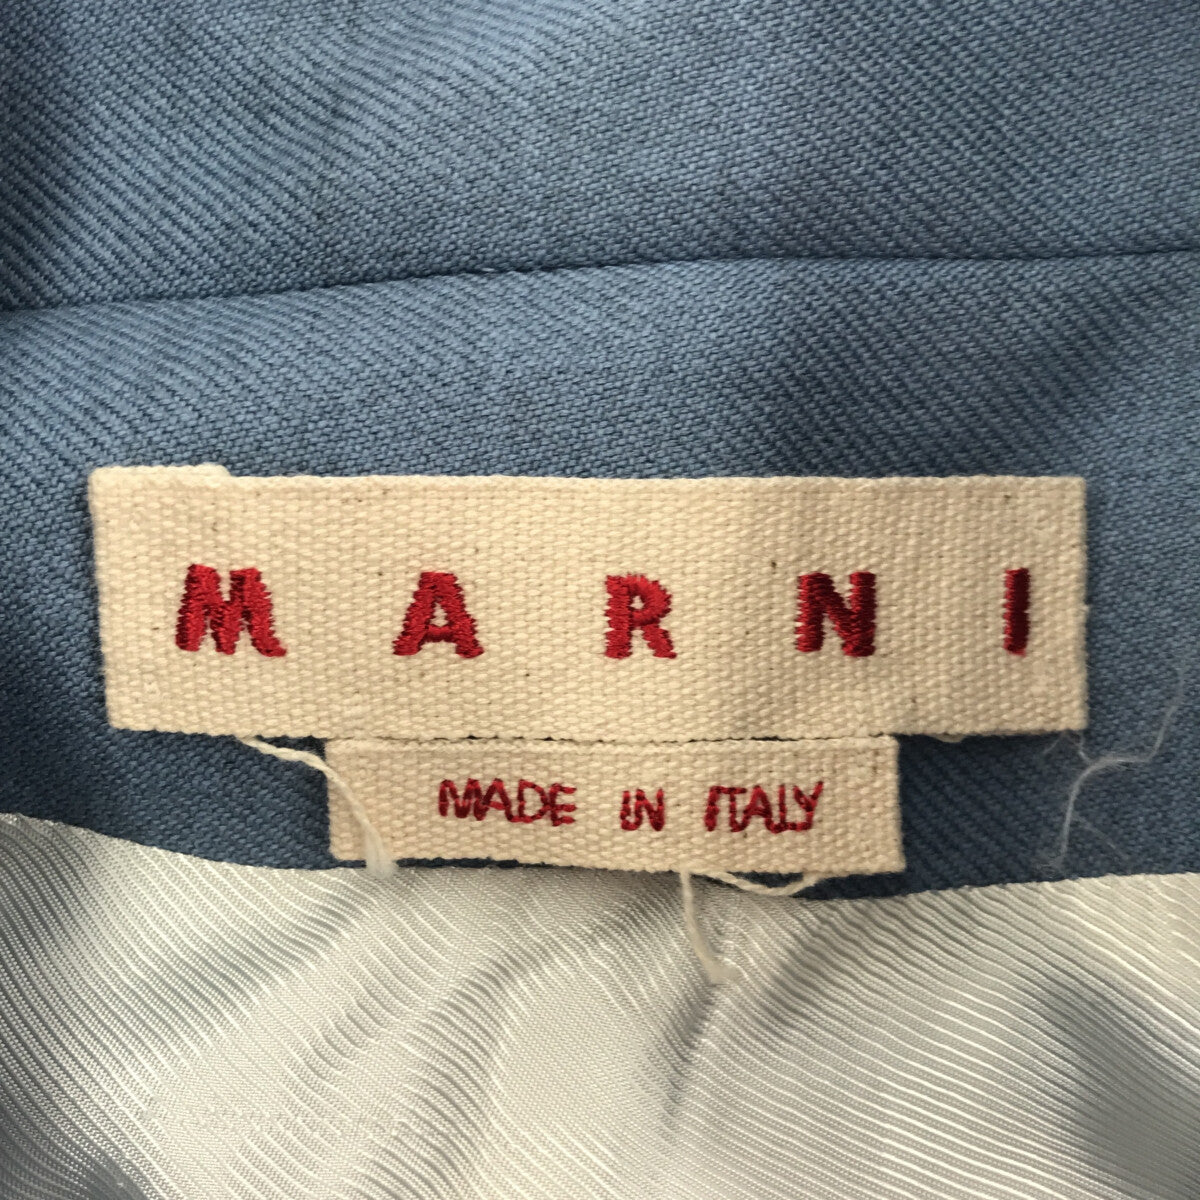 MARNI / マルニ | 2020AW | ウール ギャバジン バックギャザー ジャケット | 38 |